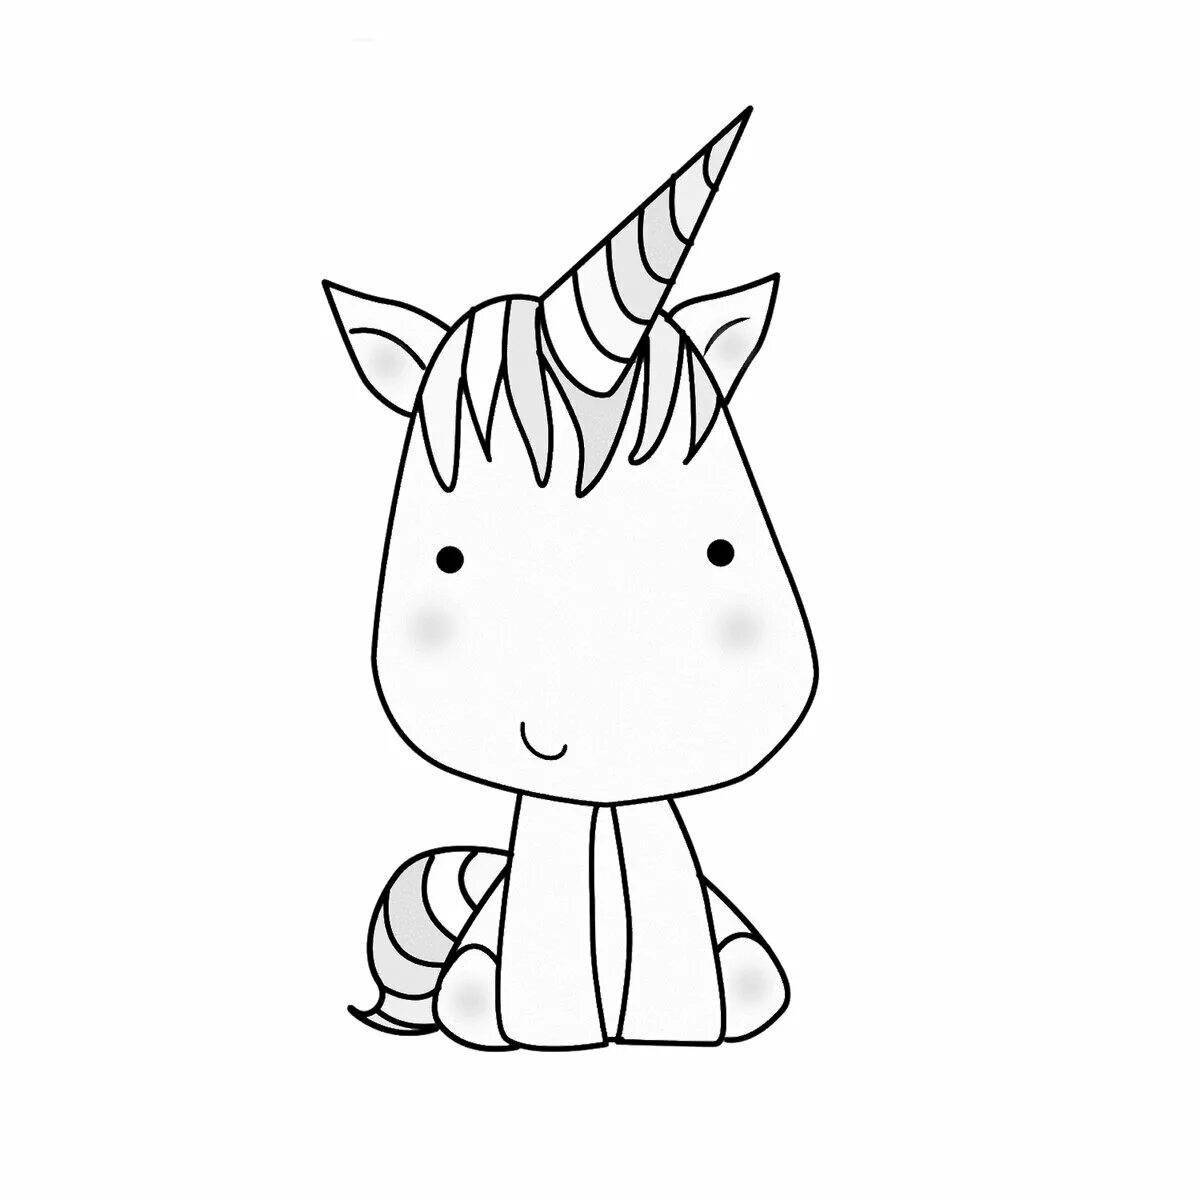 Fun coloring simple unicorn